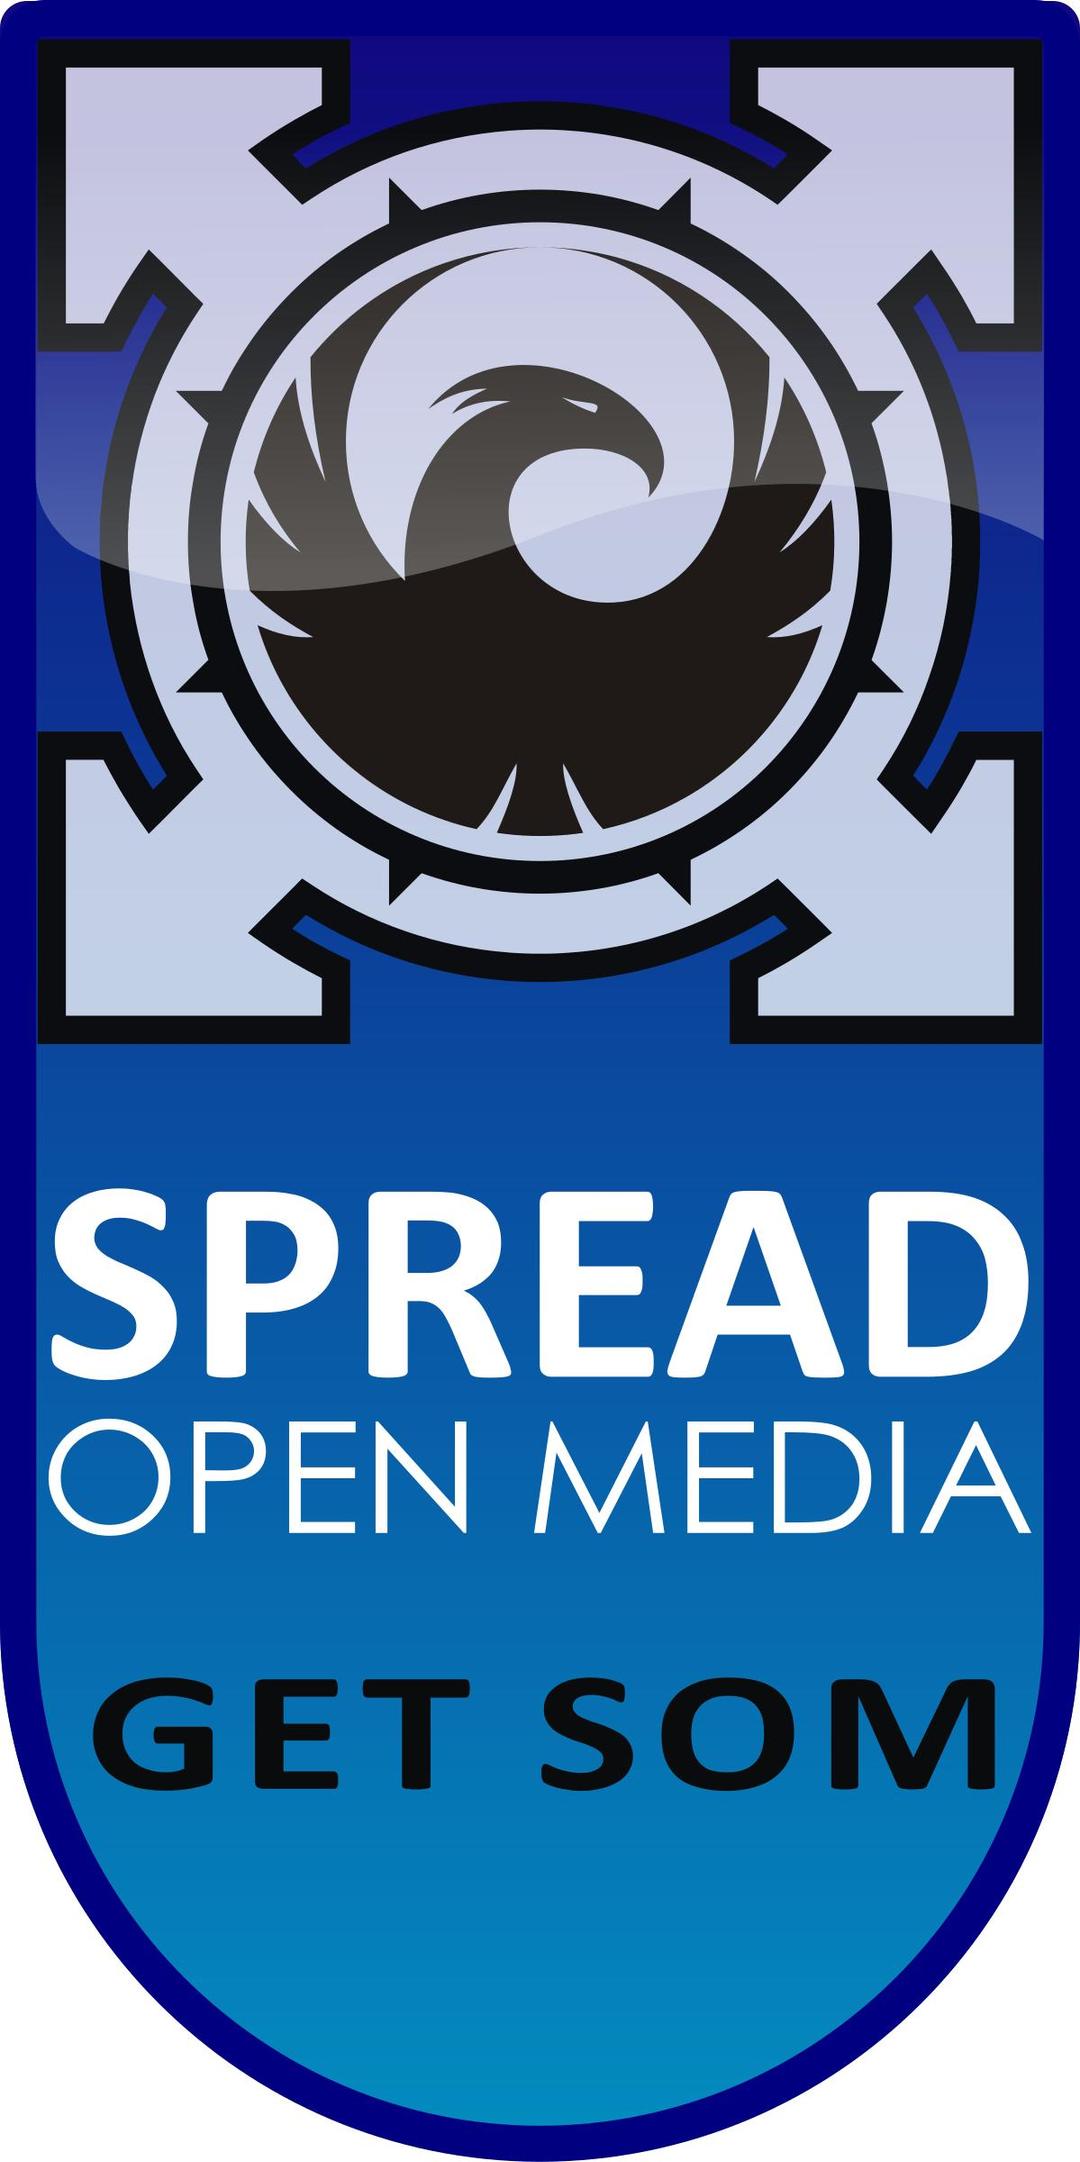 Get SOM - Spread Open Media png transparent